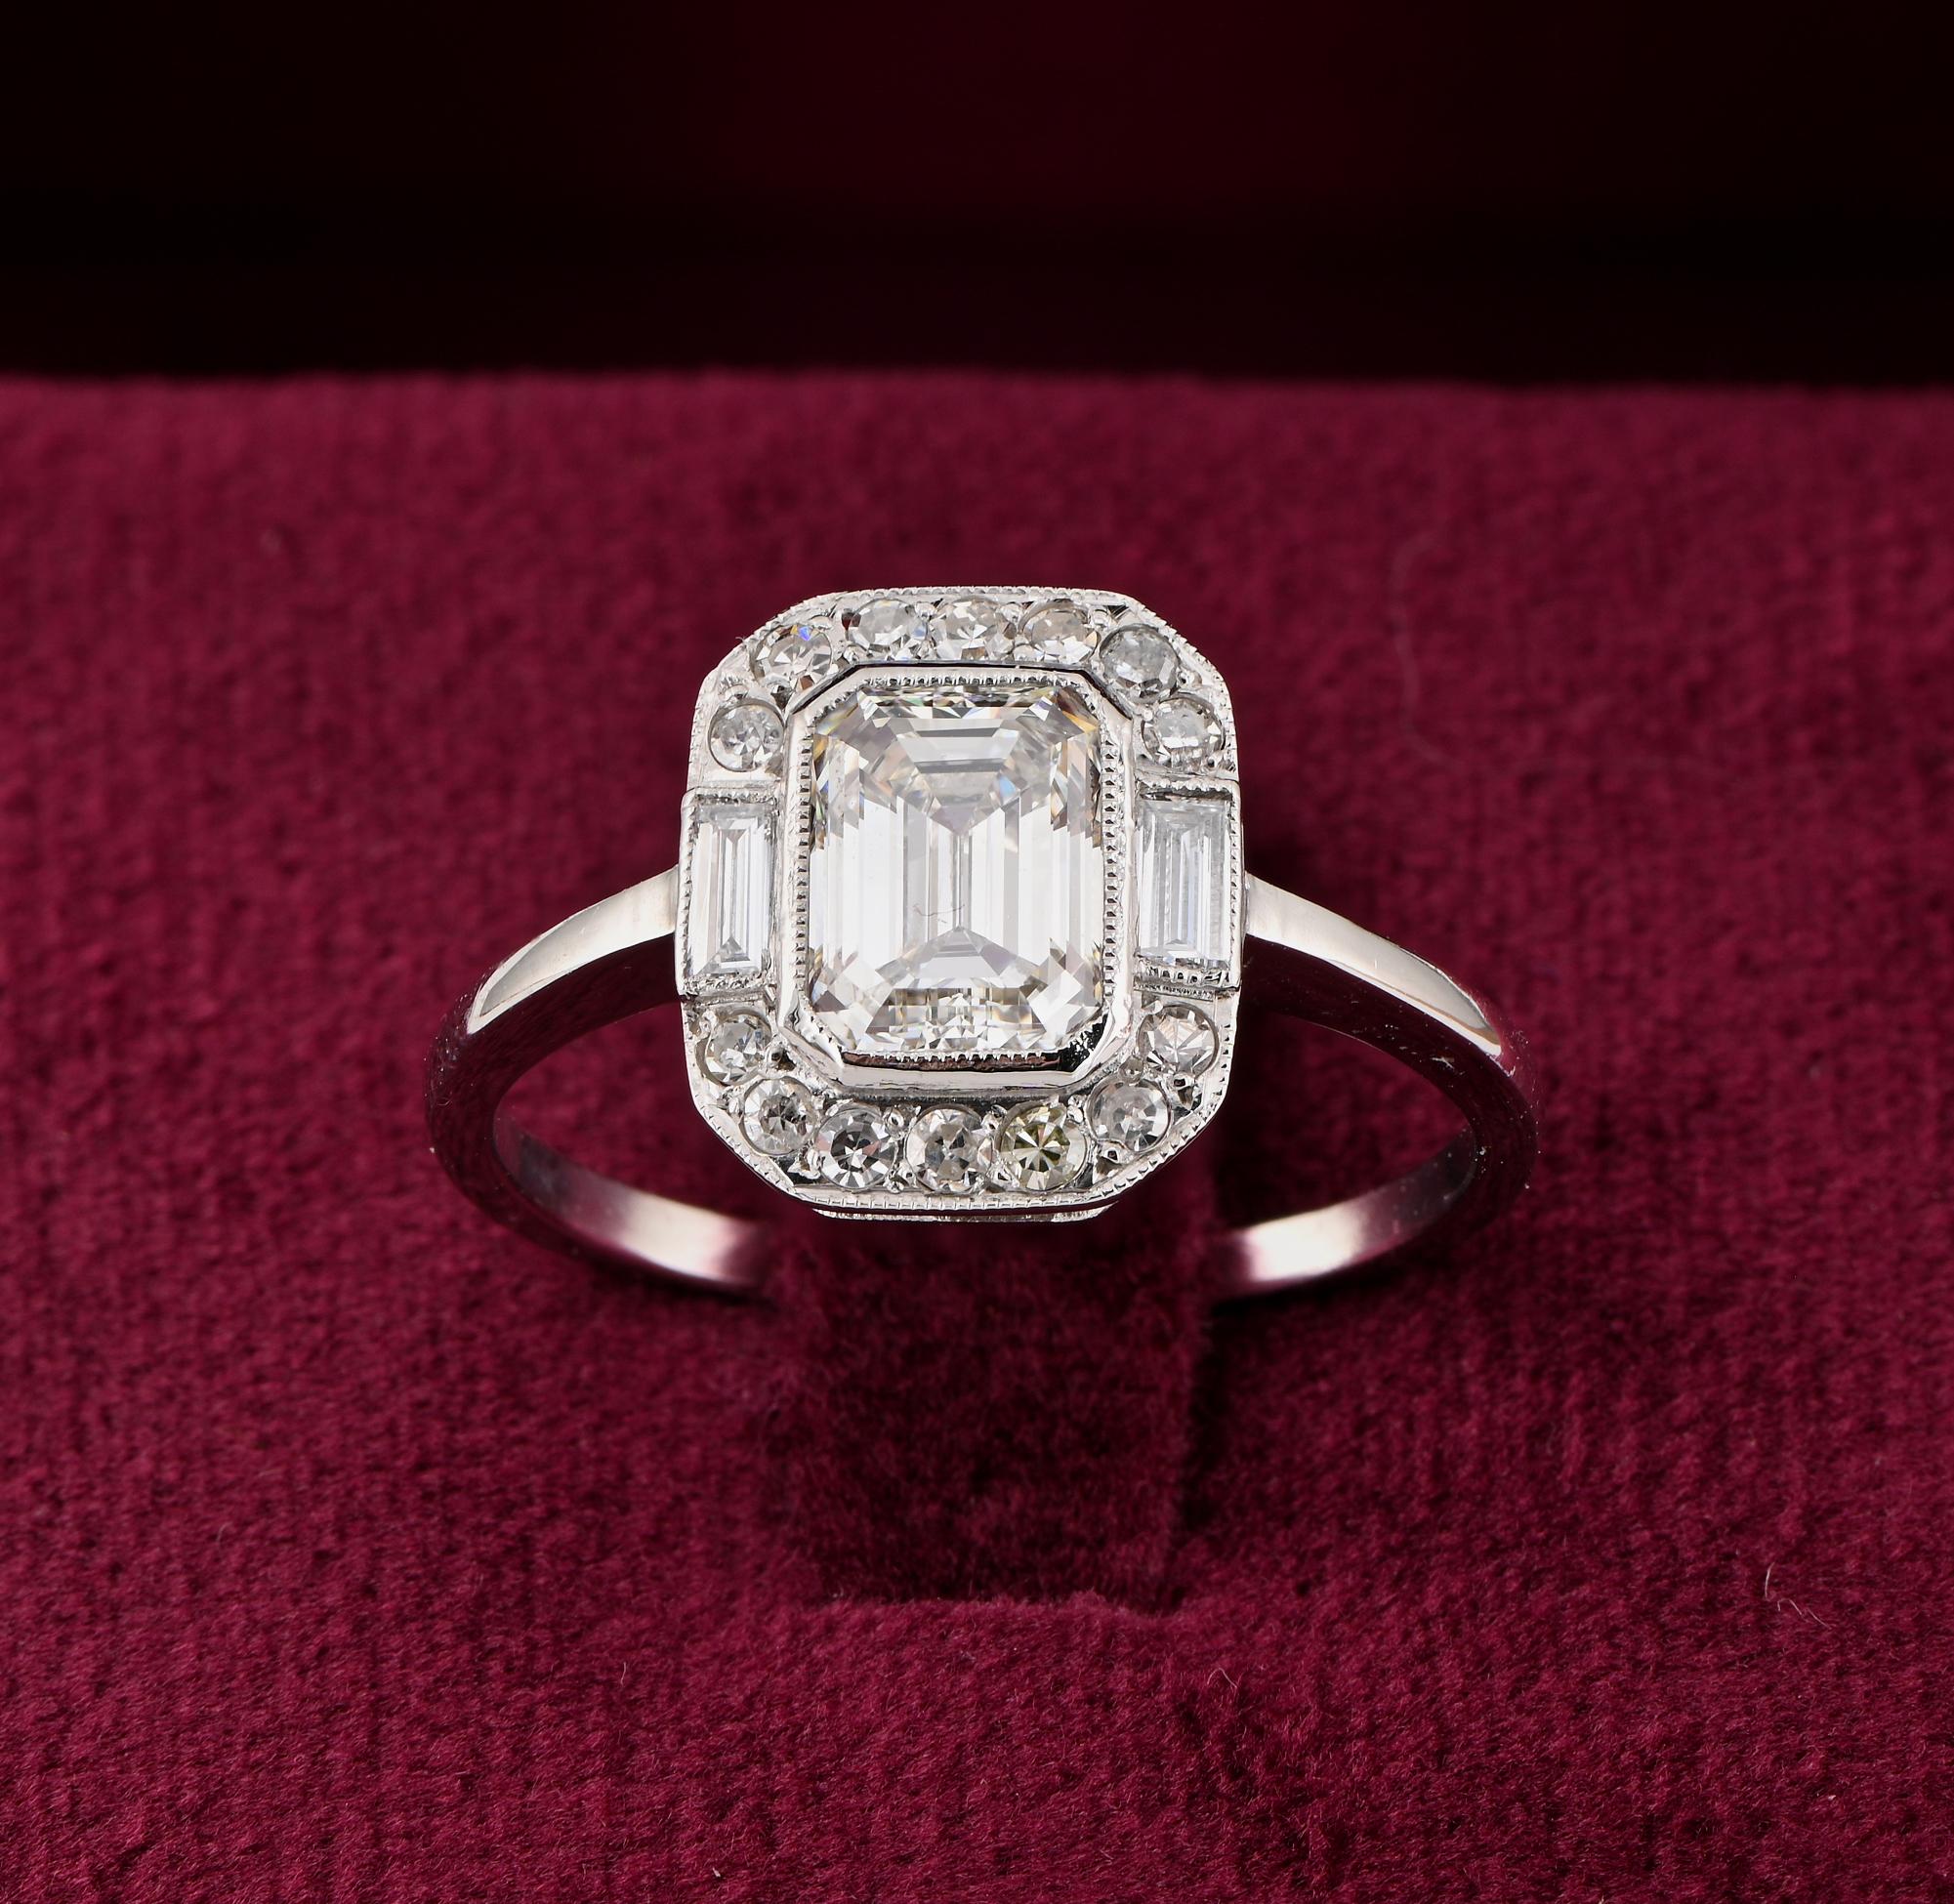 Diamant-Allüre
Diese herrliche Art Deco Zeitraum Diamant Solitär Ring ist 1925 ca.
Handgefertigt aus massivem Platin in einem zeitlosen, atemberaubenden Design, das die Form des zentralen Diamanten im Smaragdschliff mit einem umlaufenden Rand aus